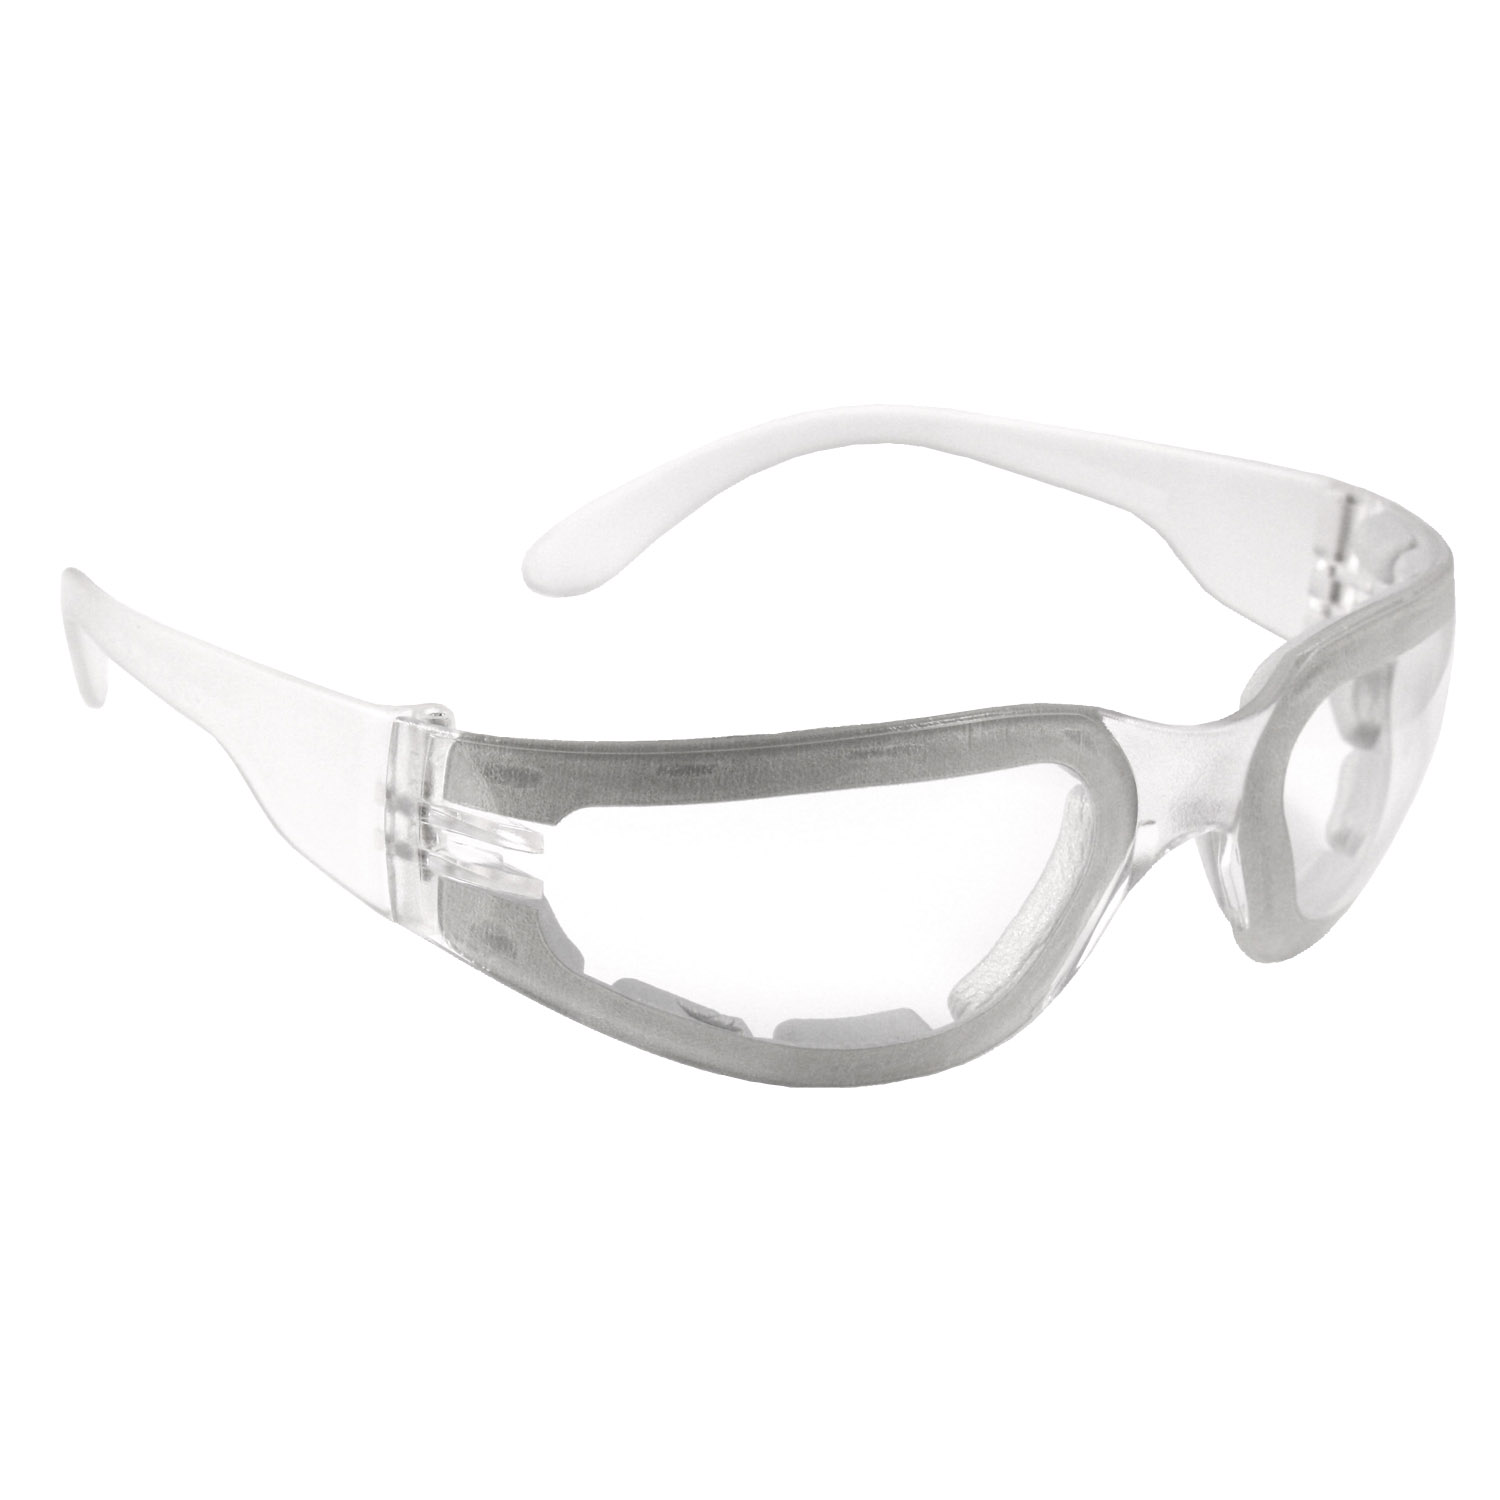 Mirage™ Foam Safety Eyewear - Clear Frame - Clear Anti-Fog Lens - Anti-Fog Lens